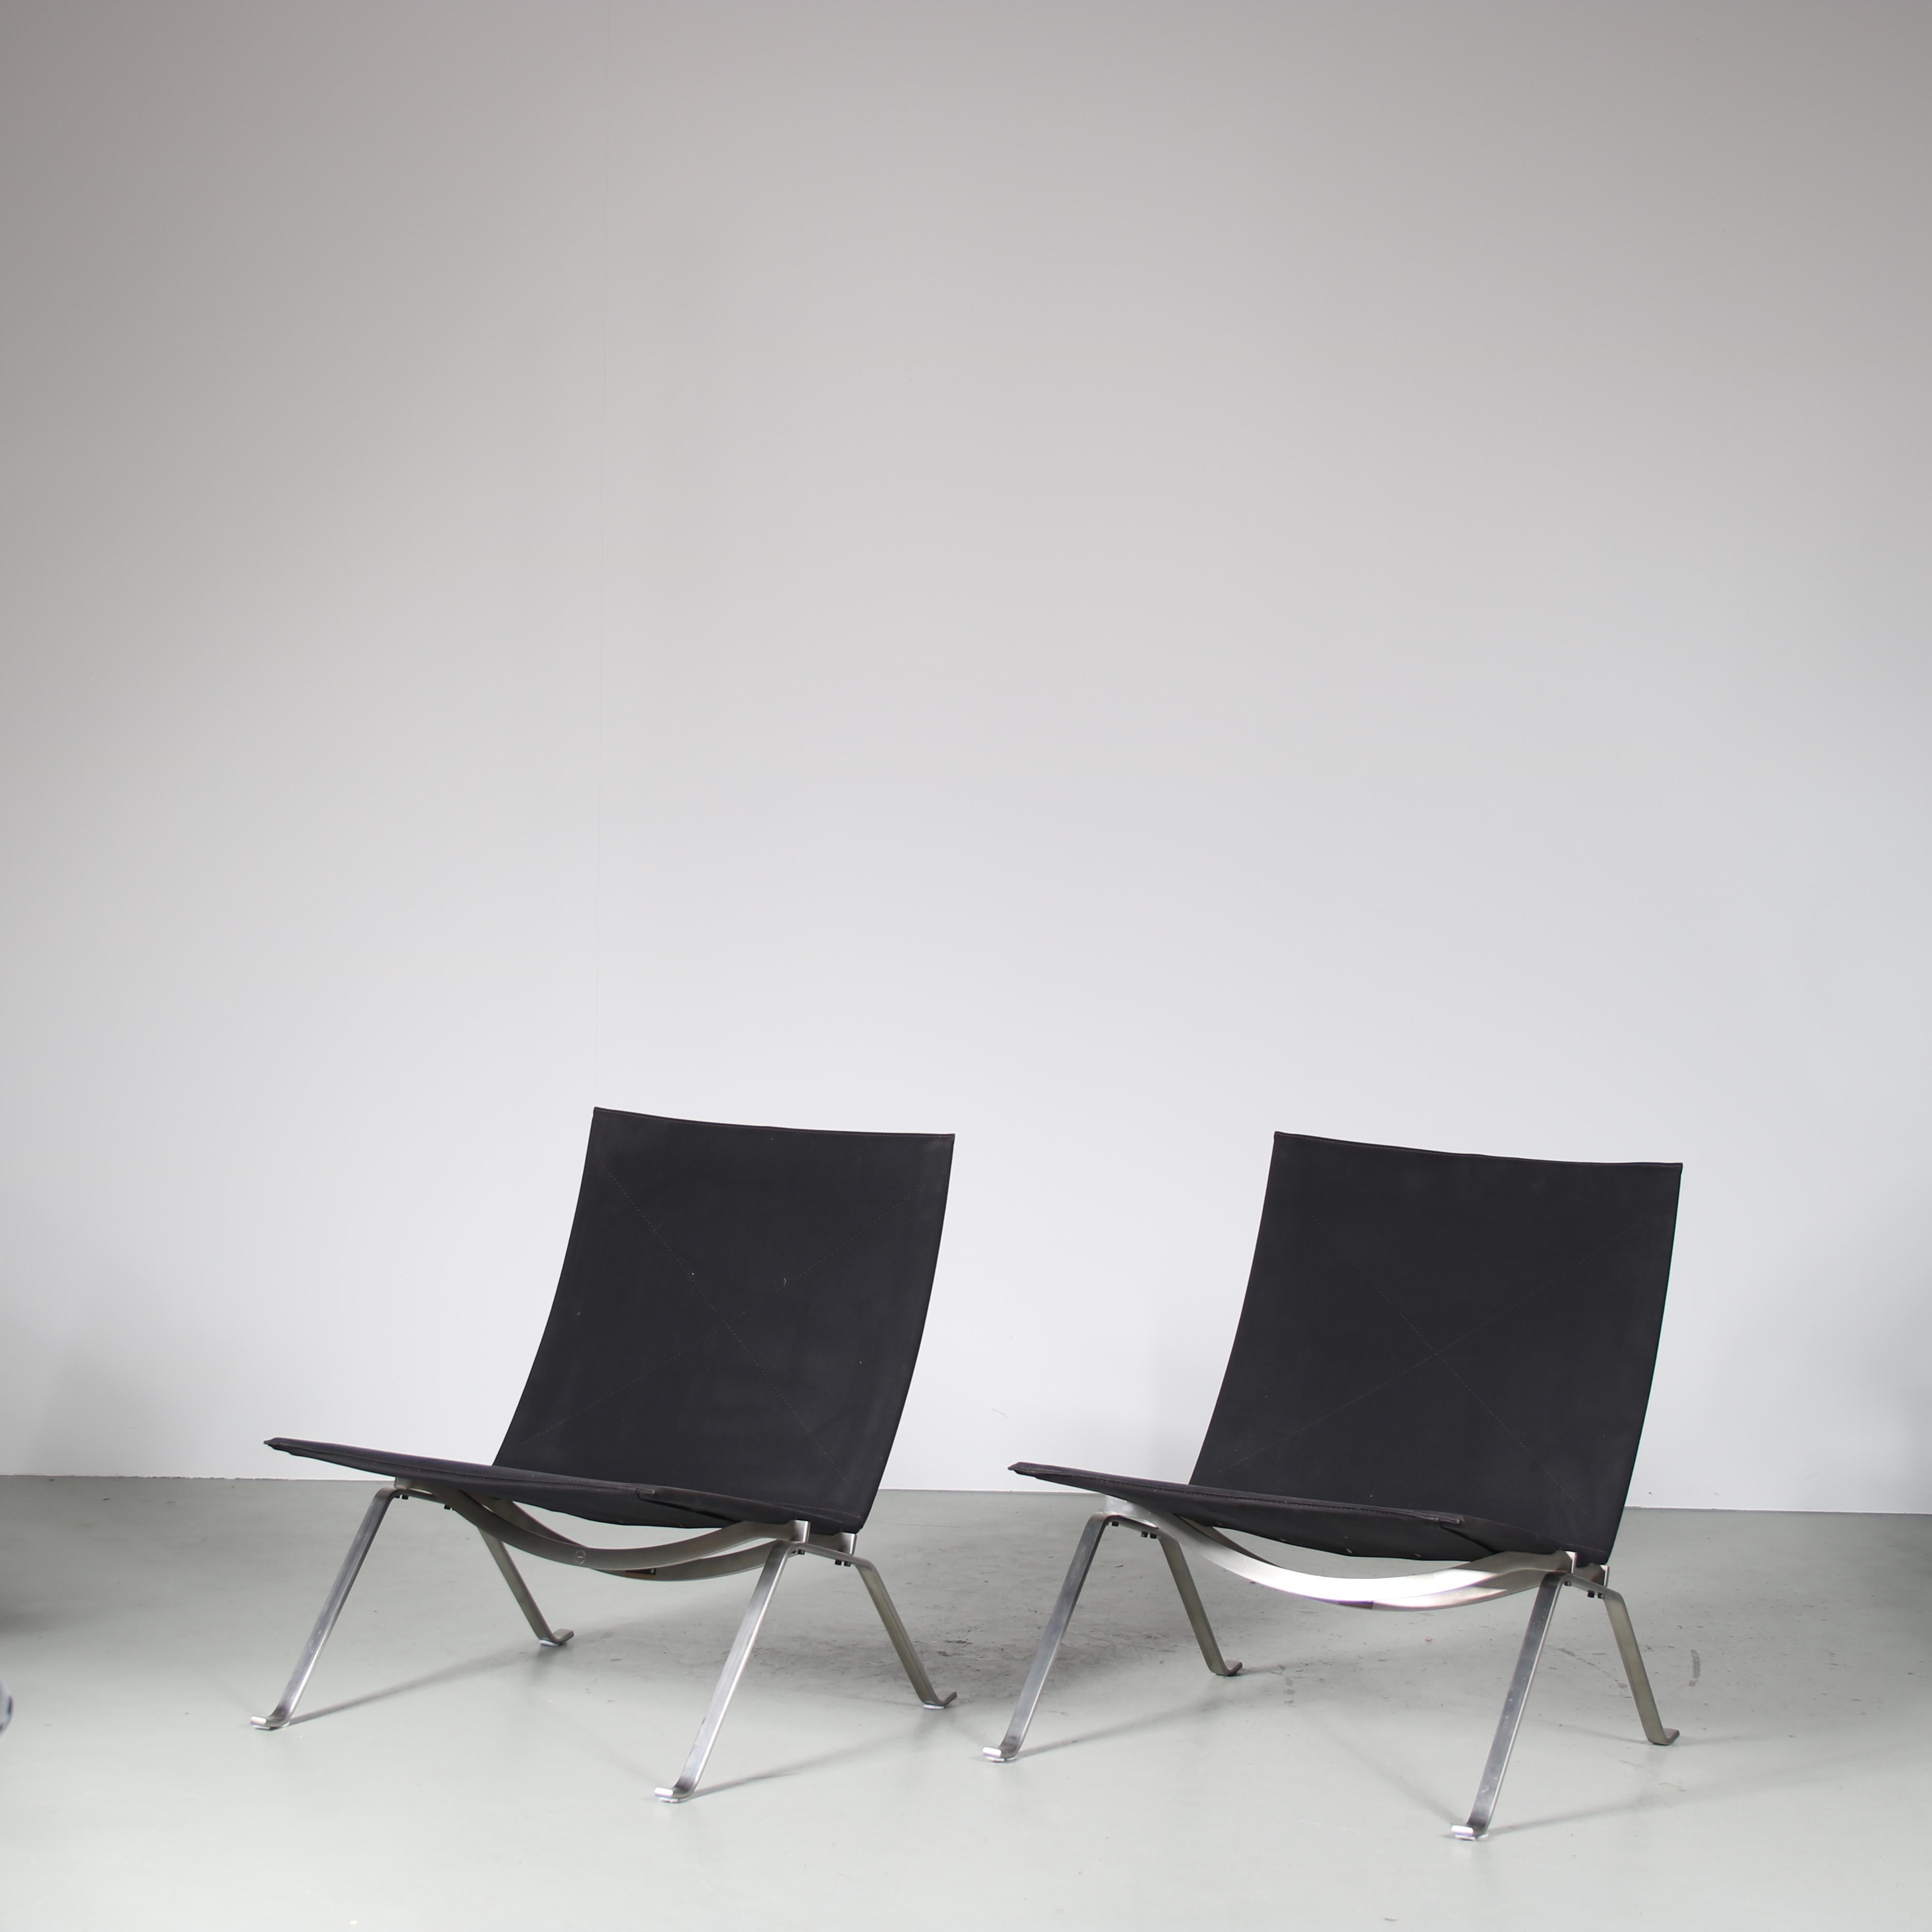 Ein atemberaubendes Paar PK22 Lounge-Sessel, entworfen von Poul Kjaerholm, hergestellt von Fritz Hansen in Dänemark im Jahr 2010.

Dieses erstaunliche Set ist aus hochwertigem verchromtem Metall gefertigt und hat einen gepolsterten Sitz aus